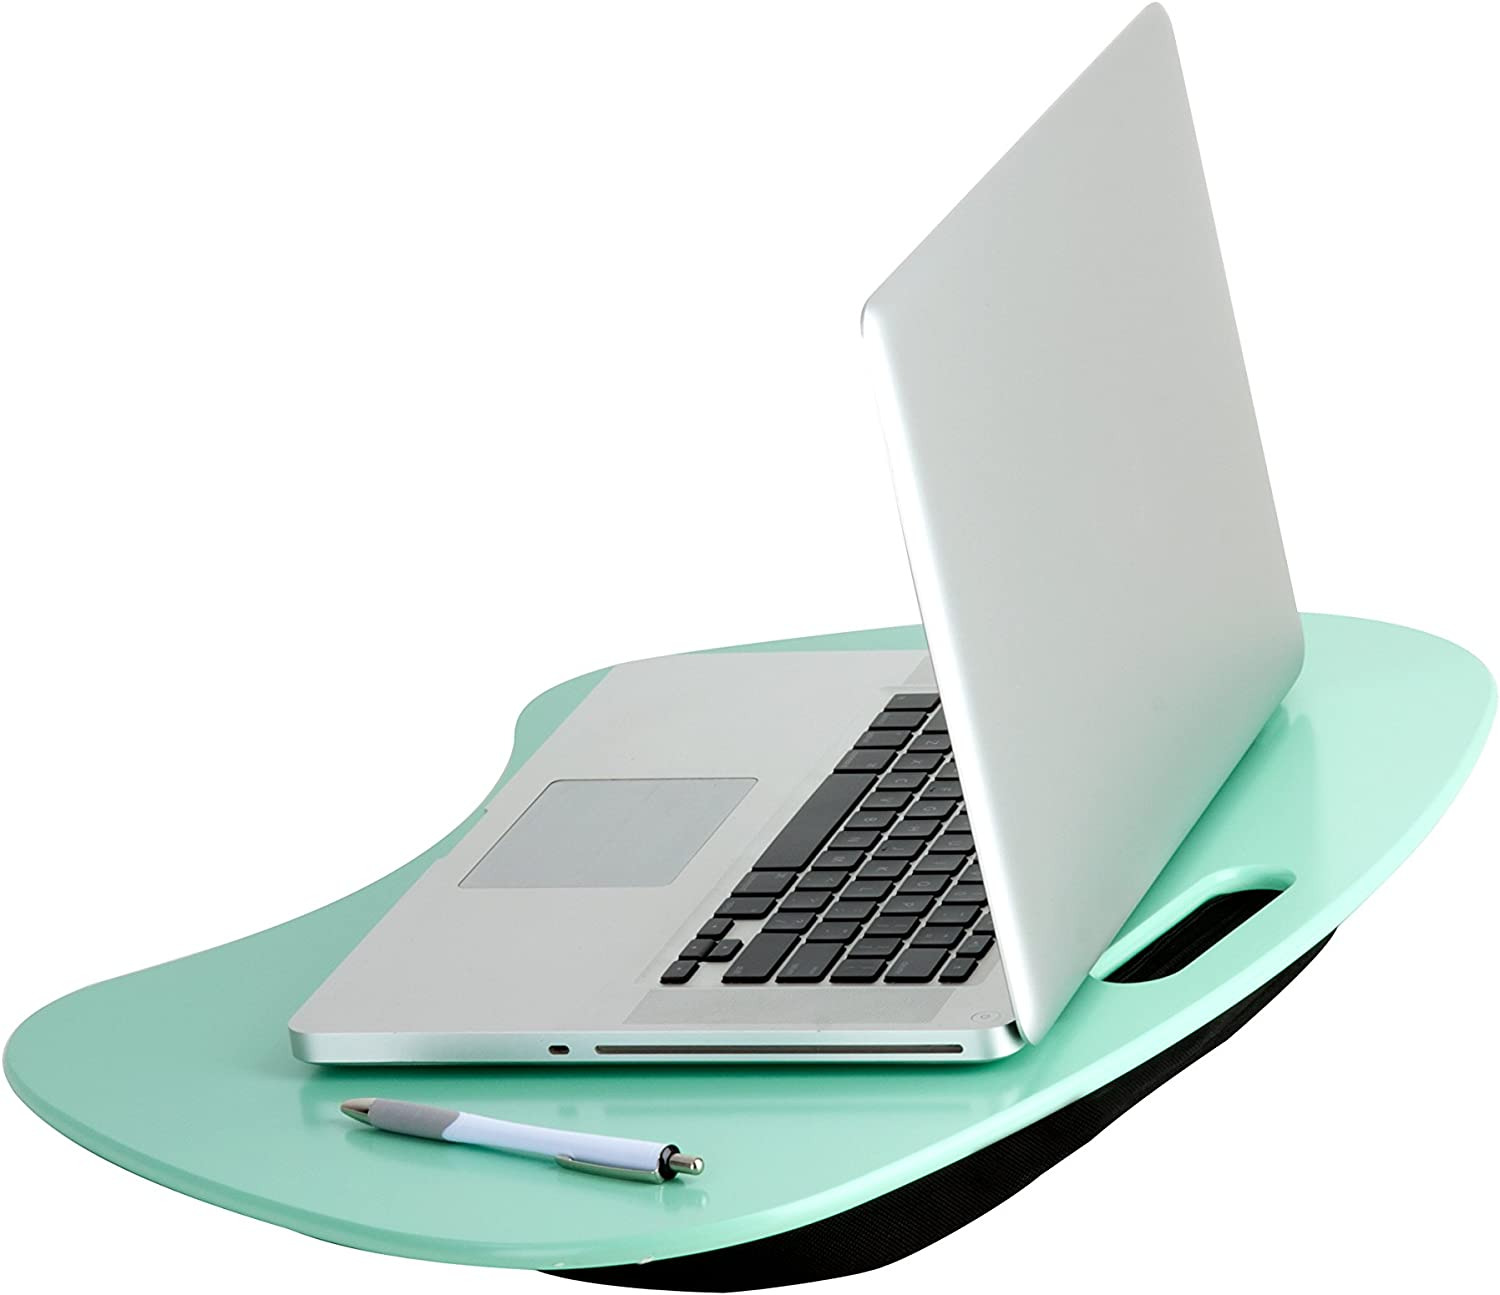 TBL-03540 Portable Laptop Lap Desk with Handle, Mint, 23 L X 16 W X 2.5 H